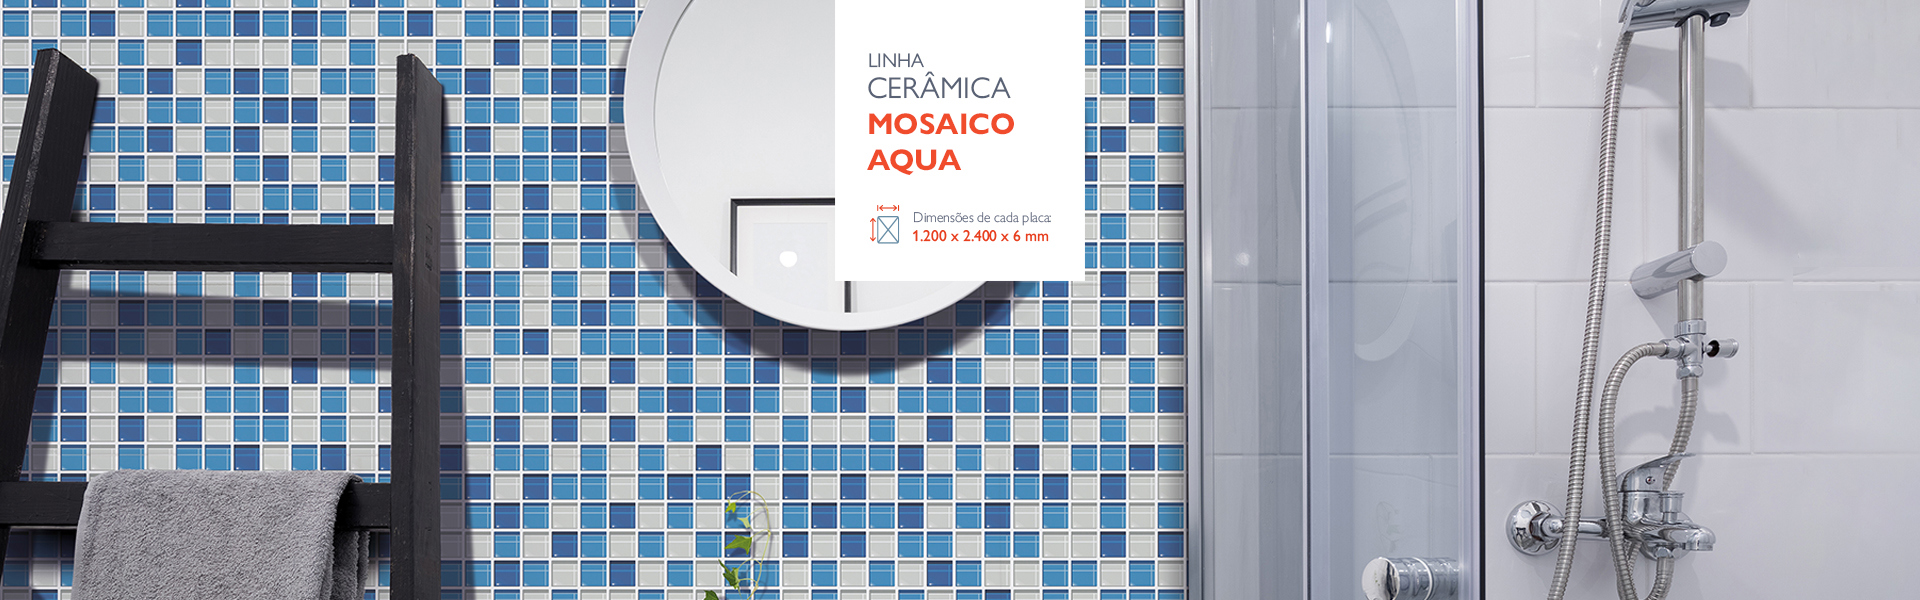 Banner-Ceramica-Mosaico-Aqua